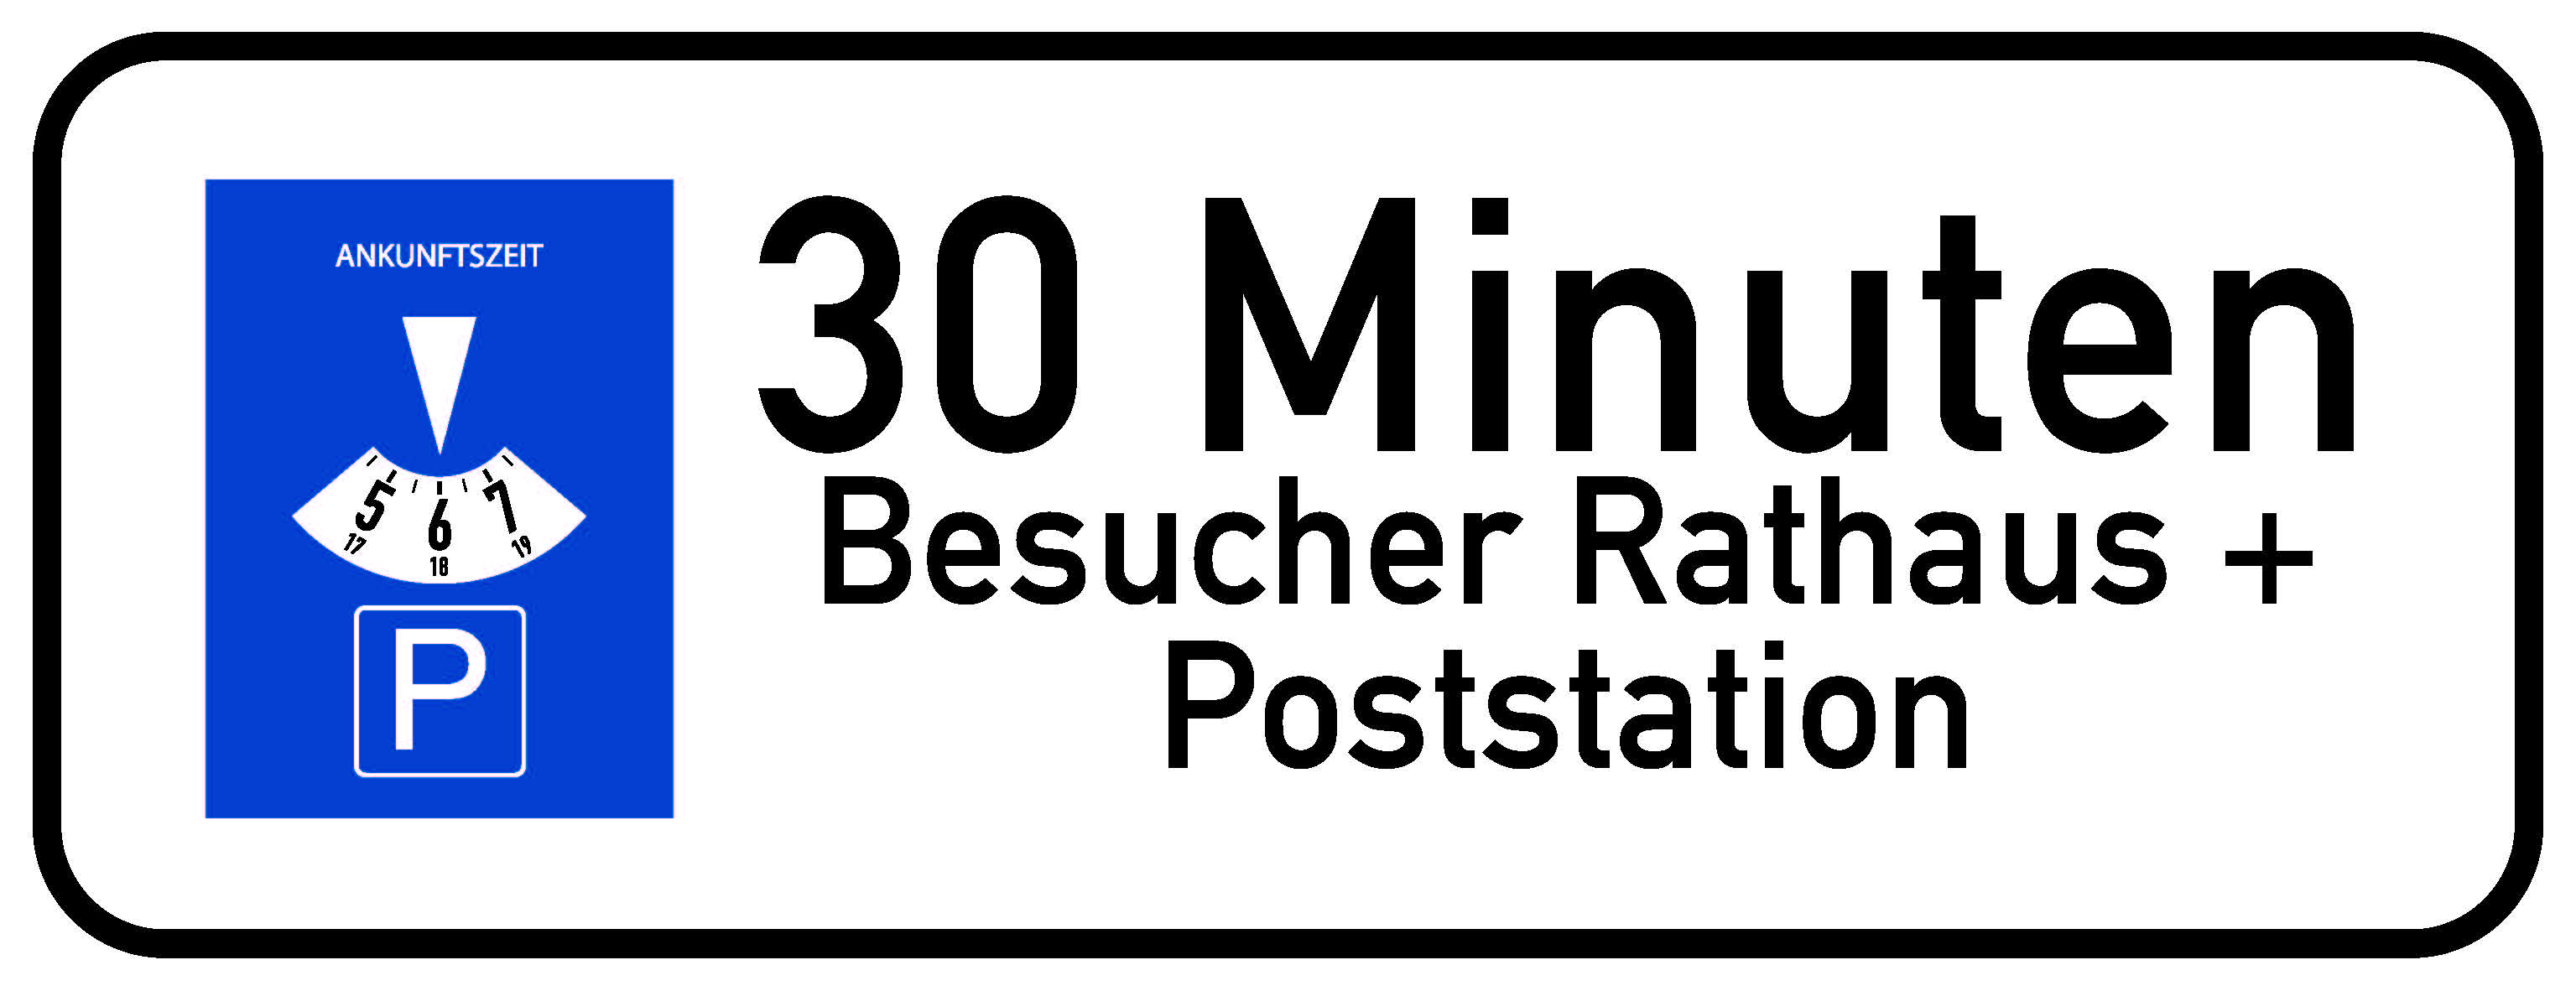 prod_Parkplatzschild_v1_Poststation_schmal.jpg